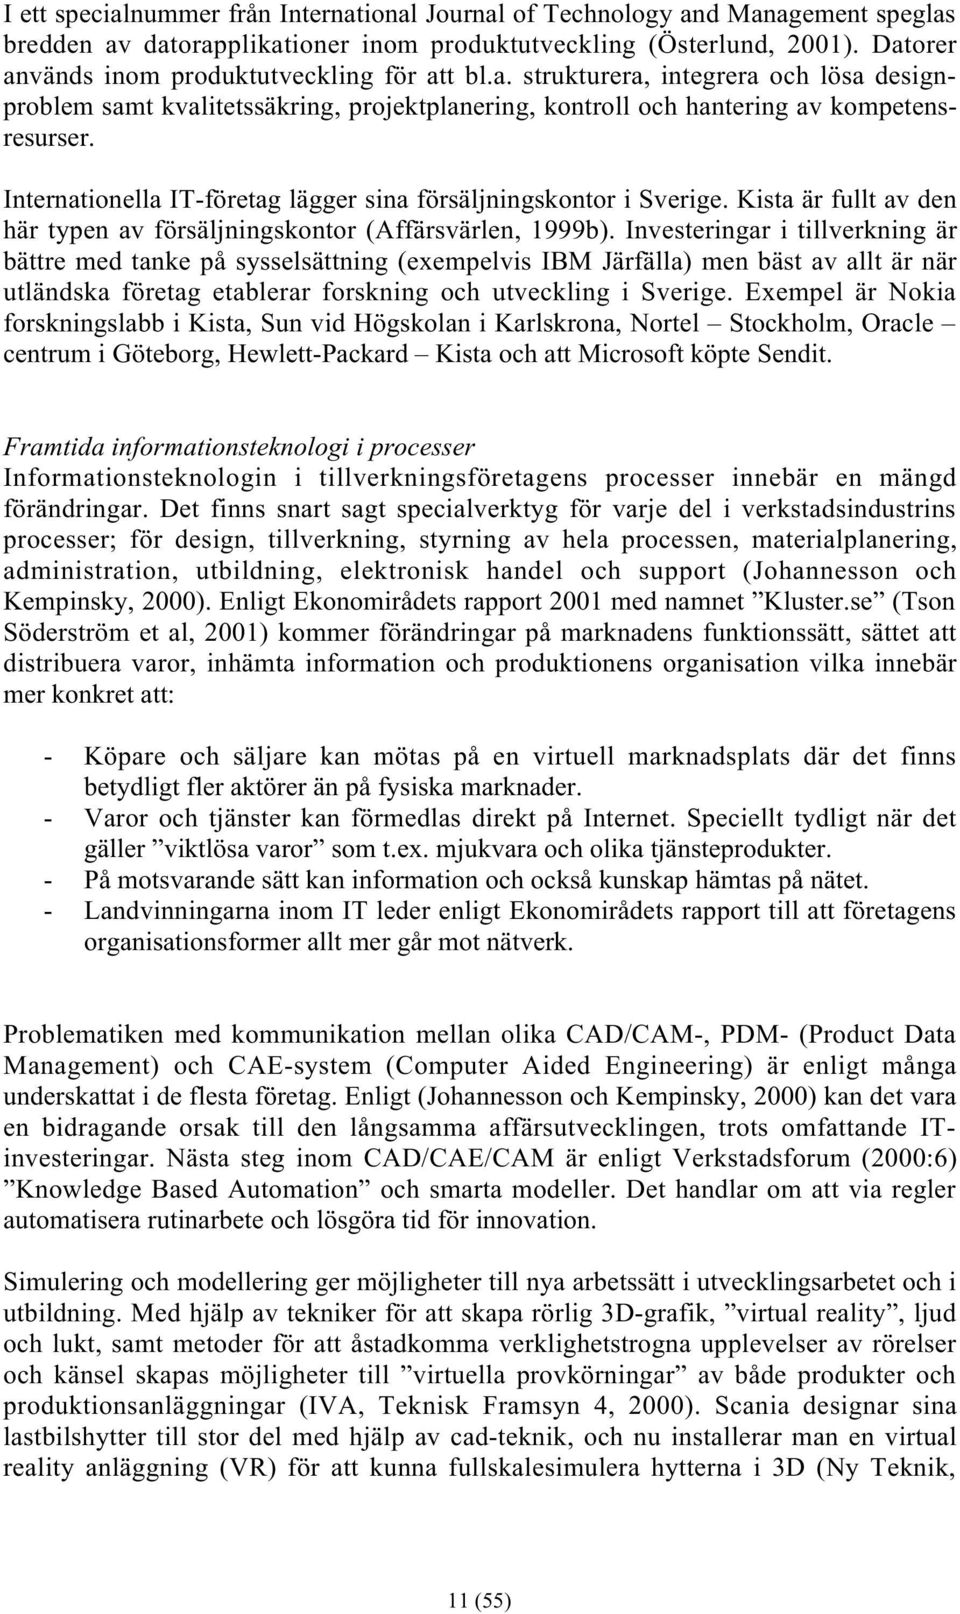 Internationella IT-företag lägger sina försäljningskontor i Sverige. Kista är fullt av den här typen av försäljningskontor (Affärsvärlen, 1999b).